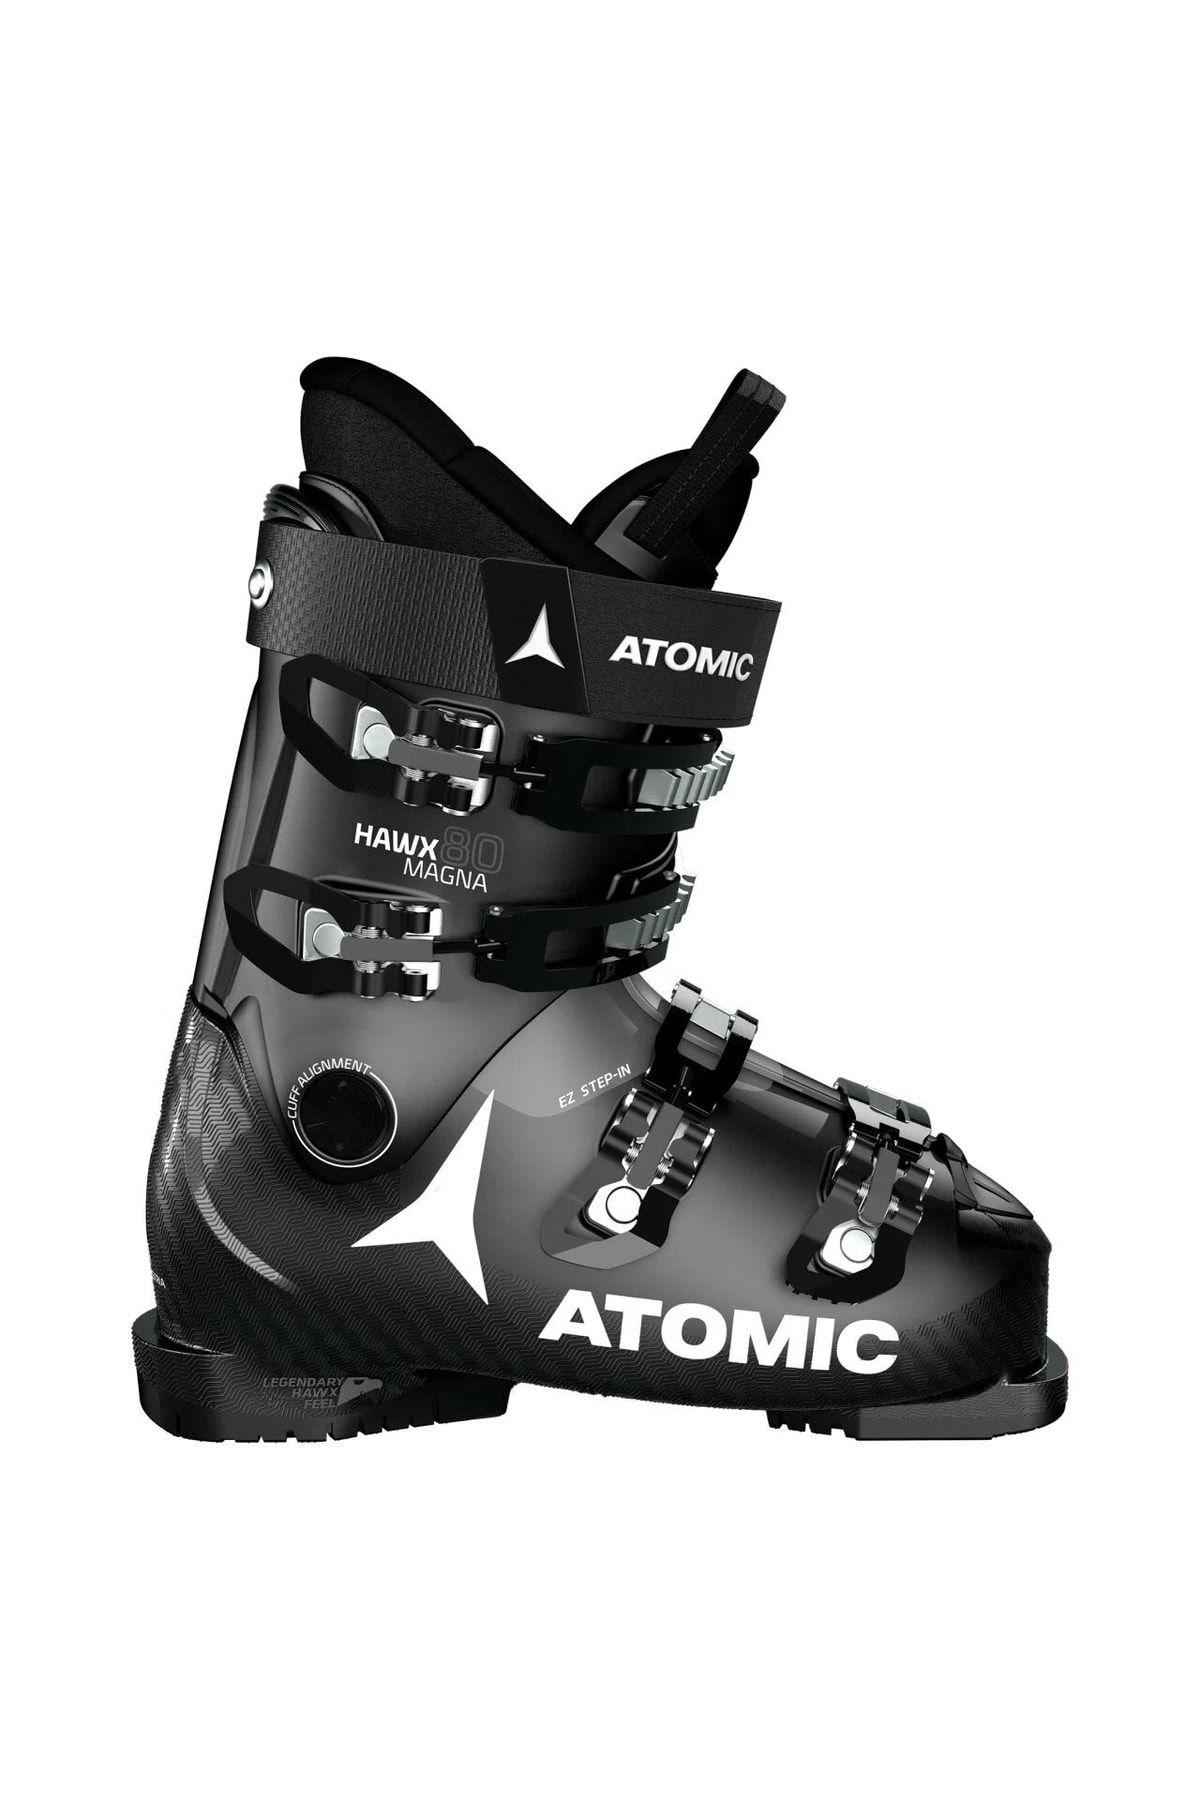 Atomic Hawx Magna 80 Black/anthracite Kayak Ayakkabısı